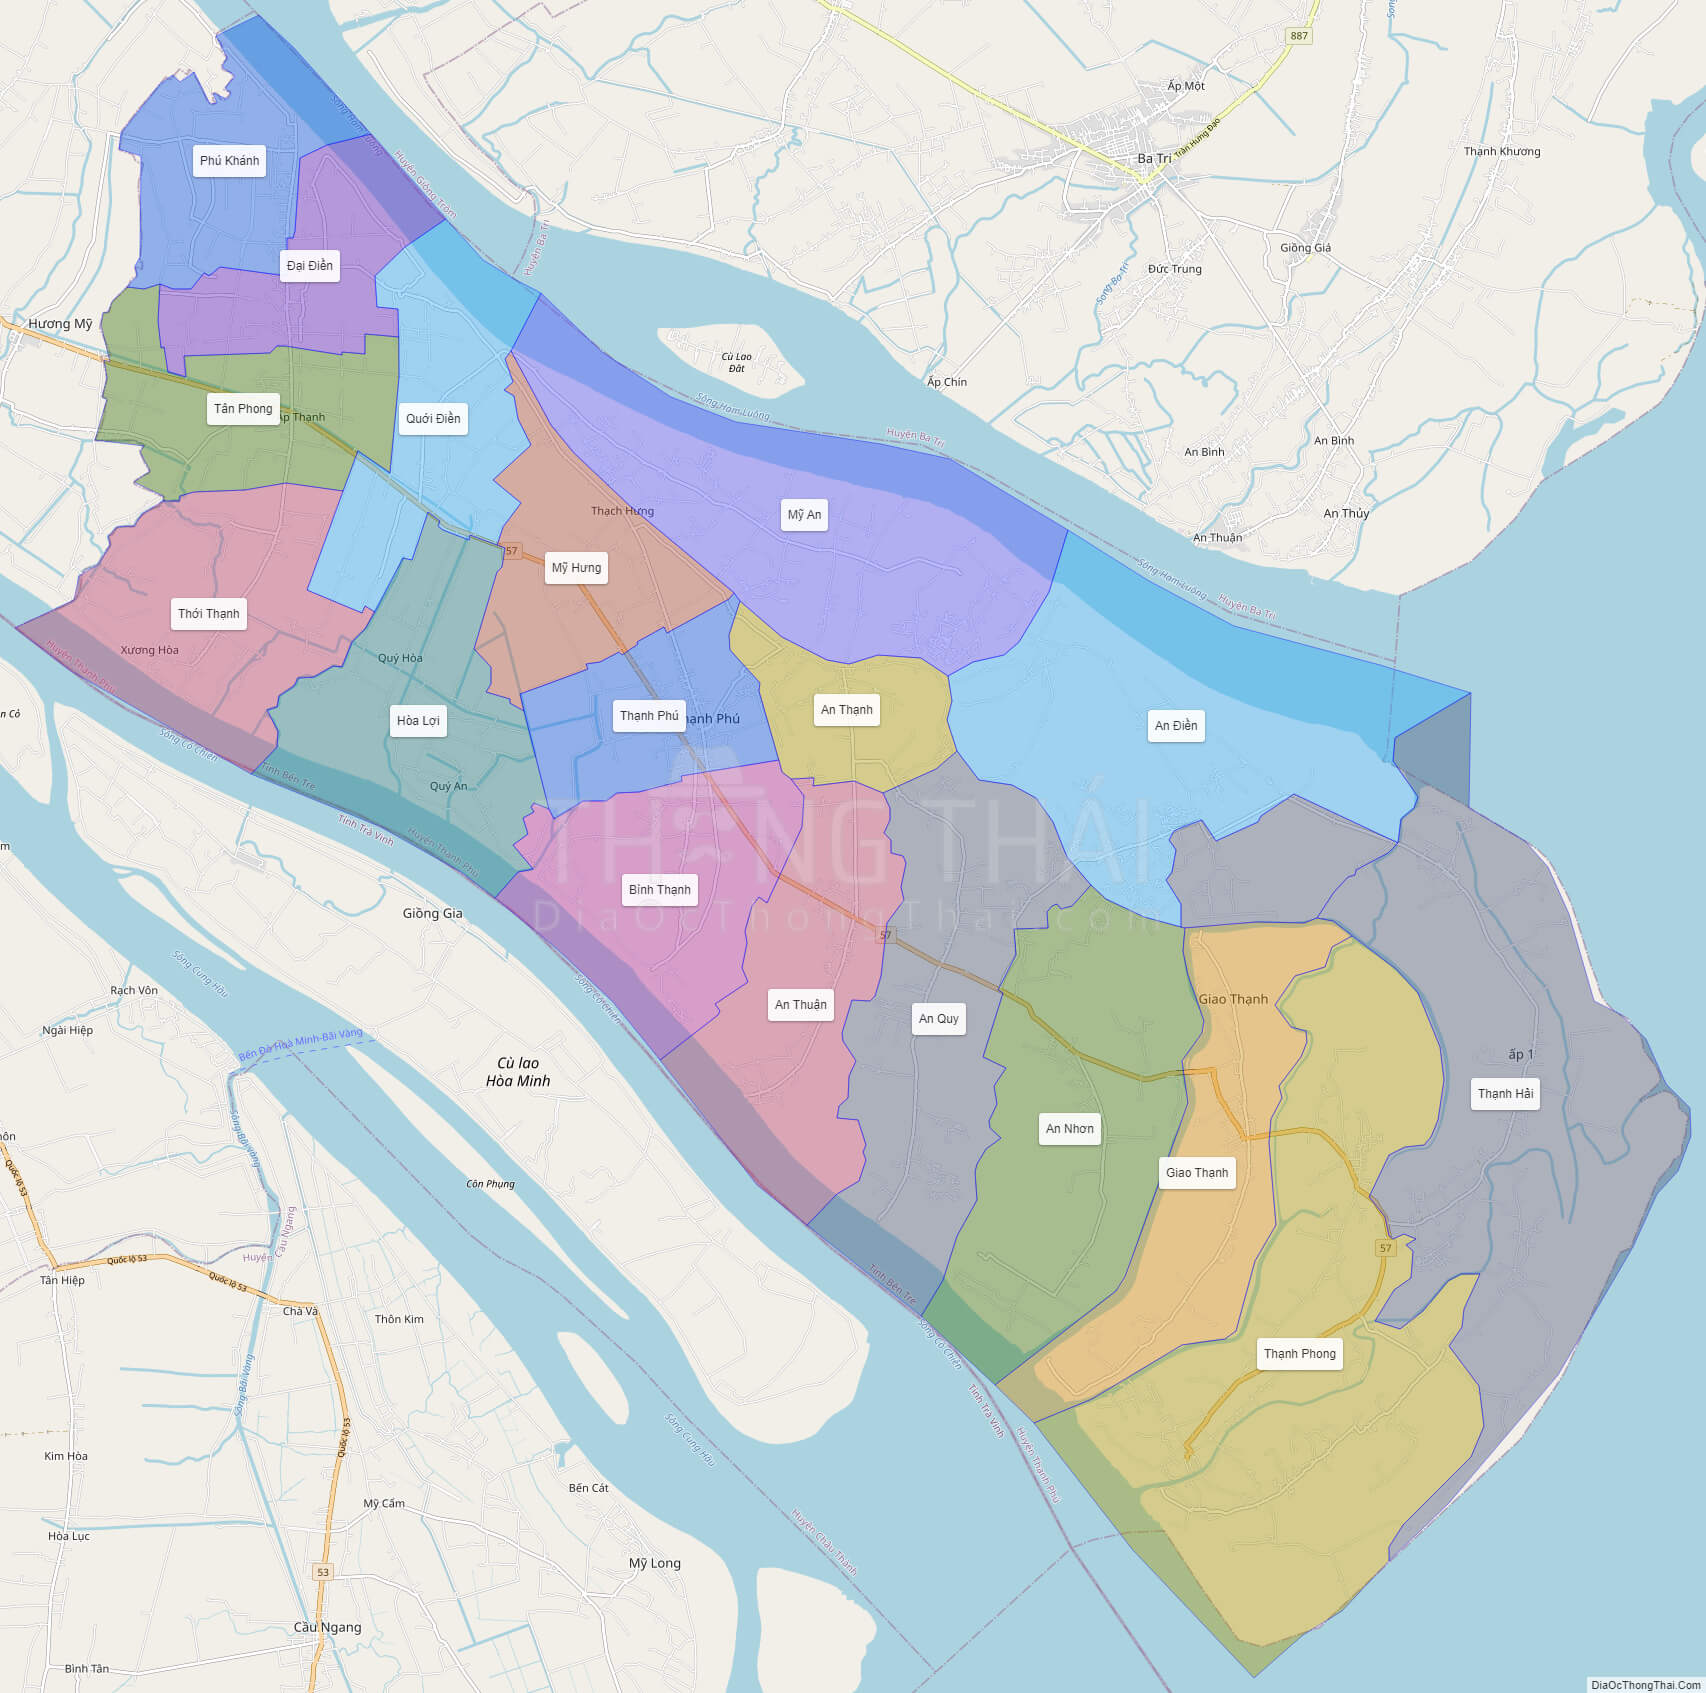 Bản đồ huyện Bình Đại - Bến Tre: 
Khám phá vùng đất xinh đẹp với bản đồ huyện Bình Đại - Bến Tre được cập nhật đến năm